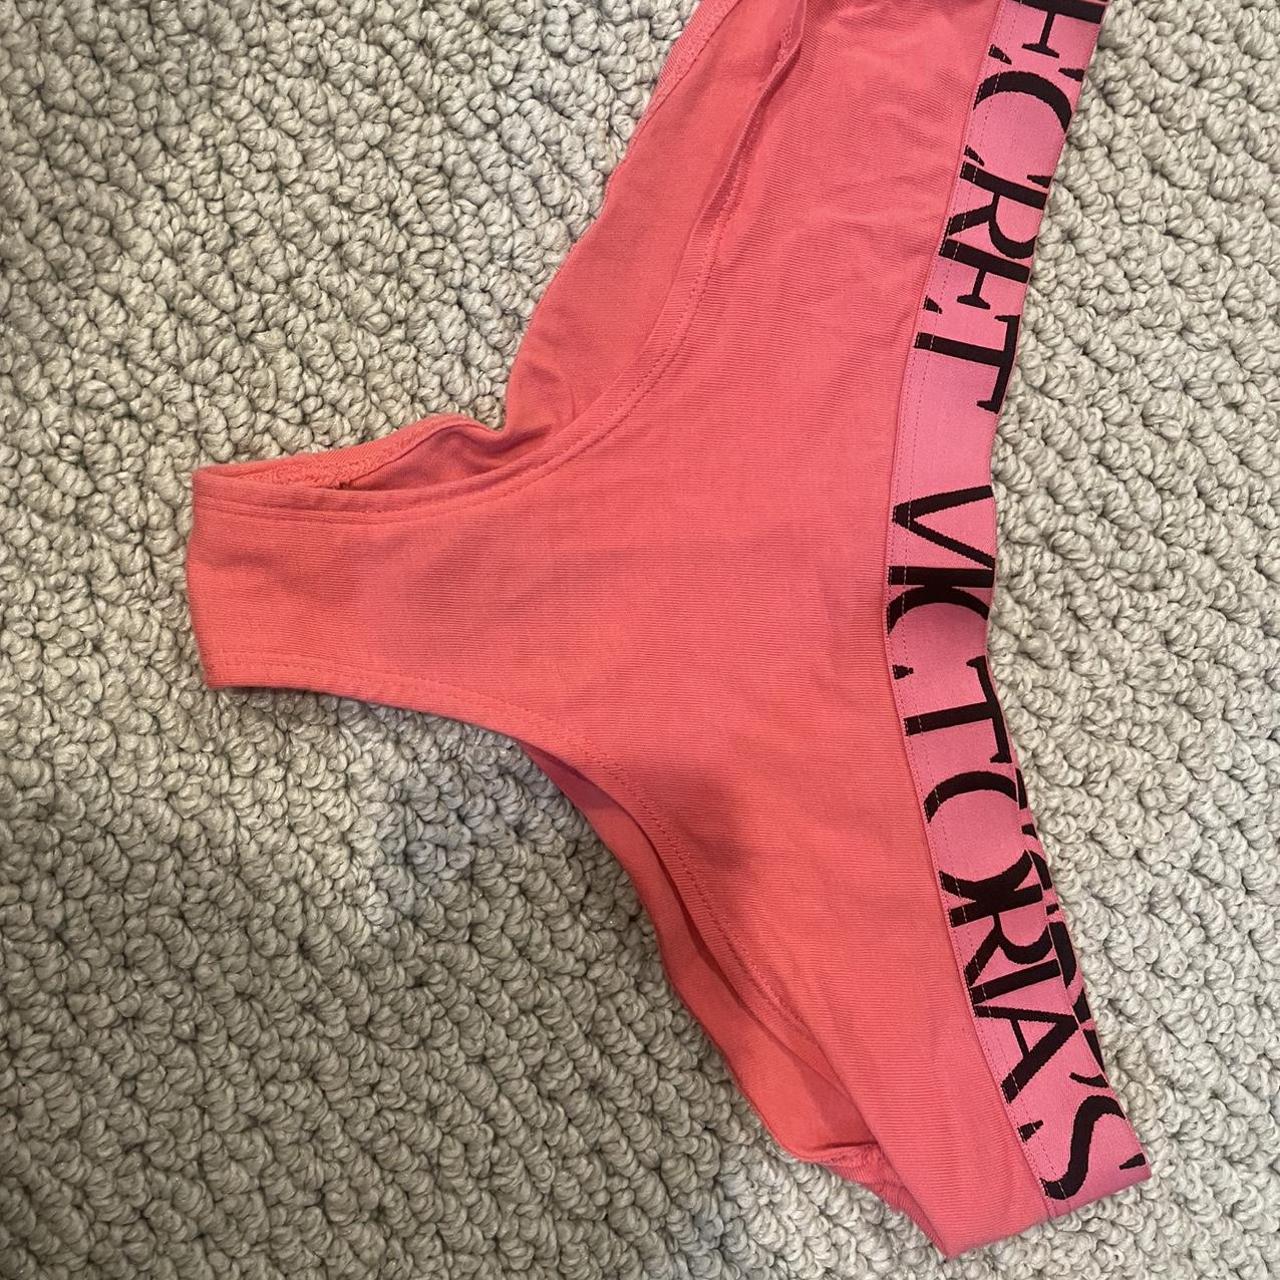 Pink Victoria’s Secret underwear